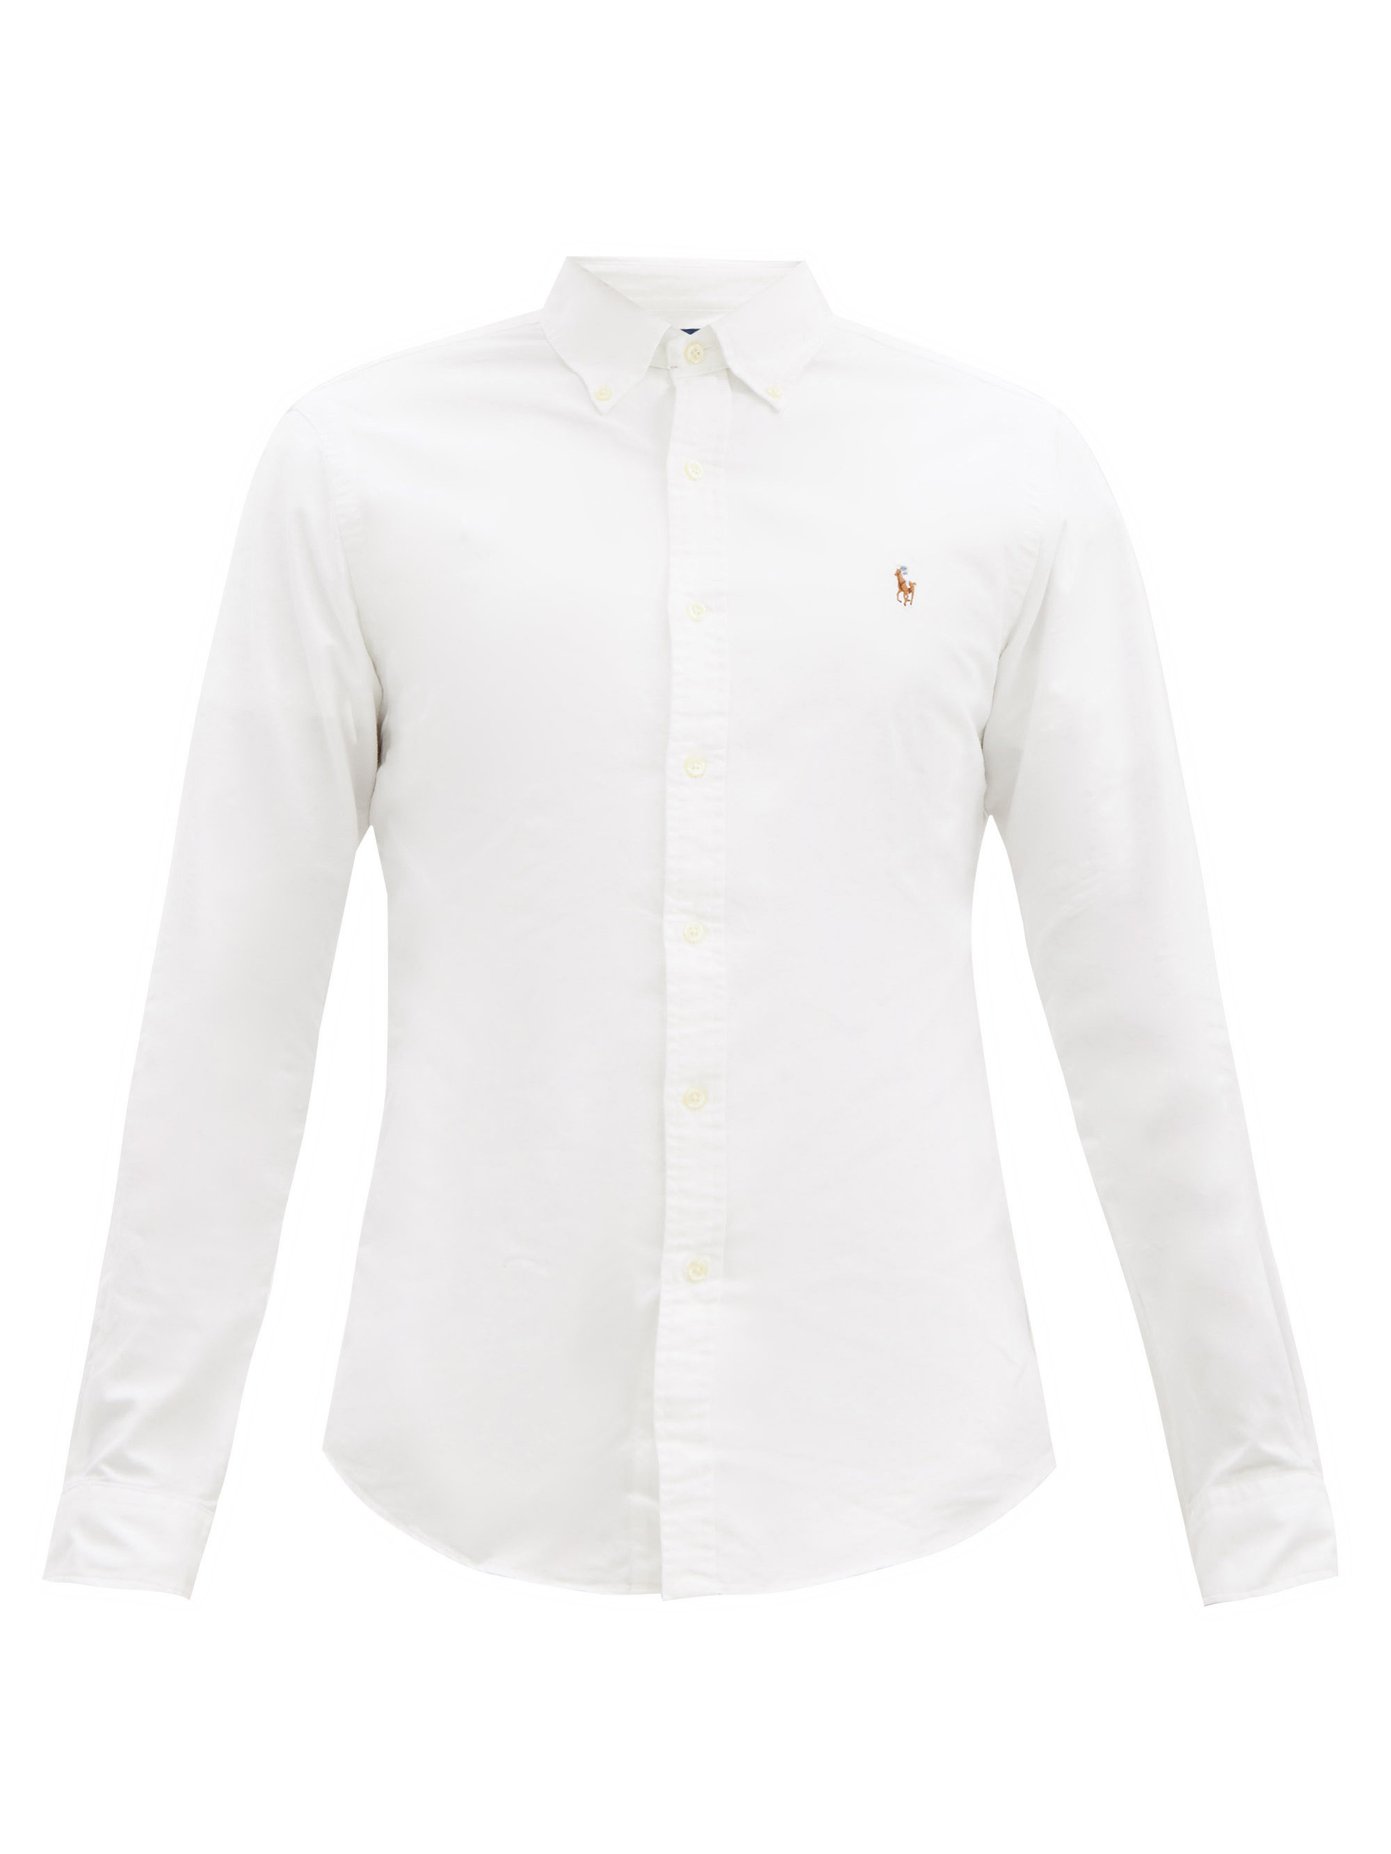 polo cotton oxford shirt